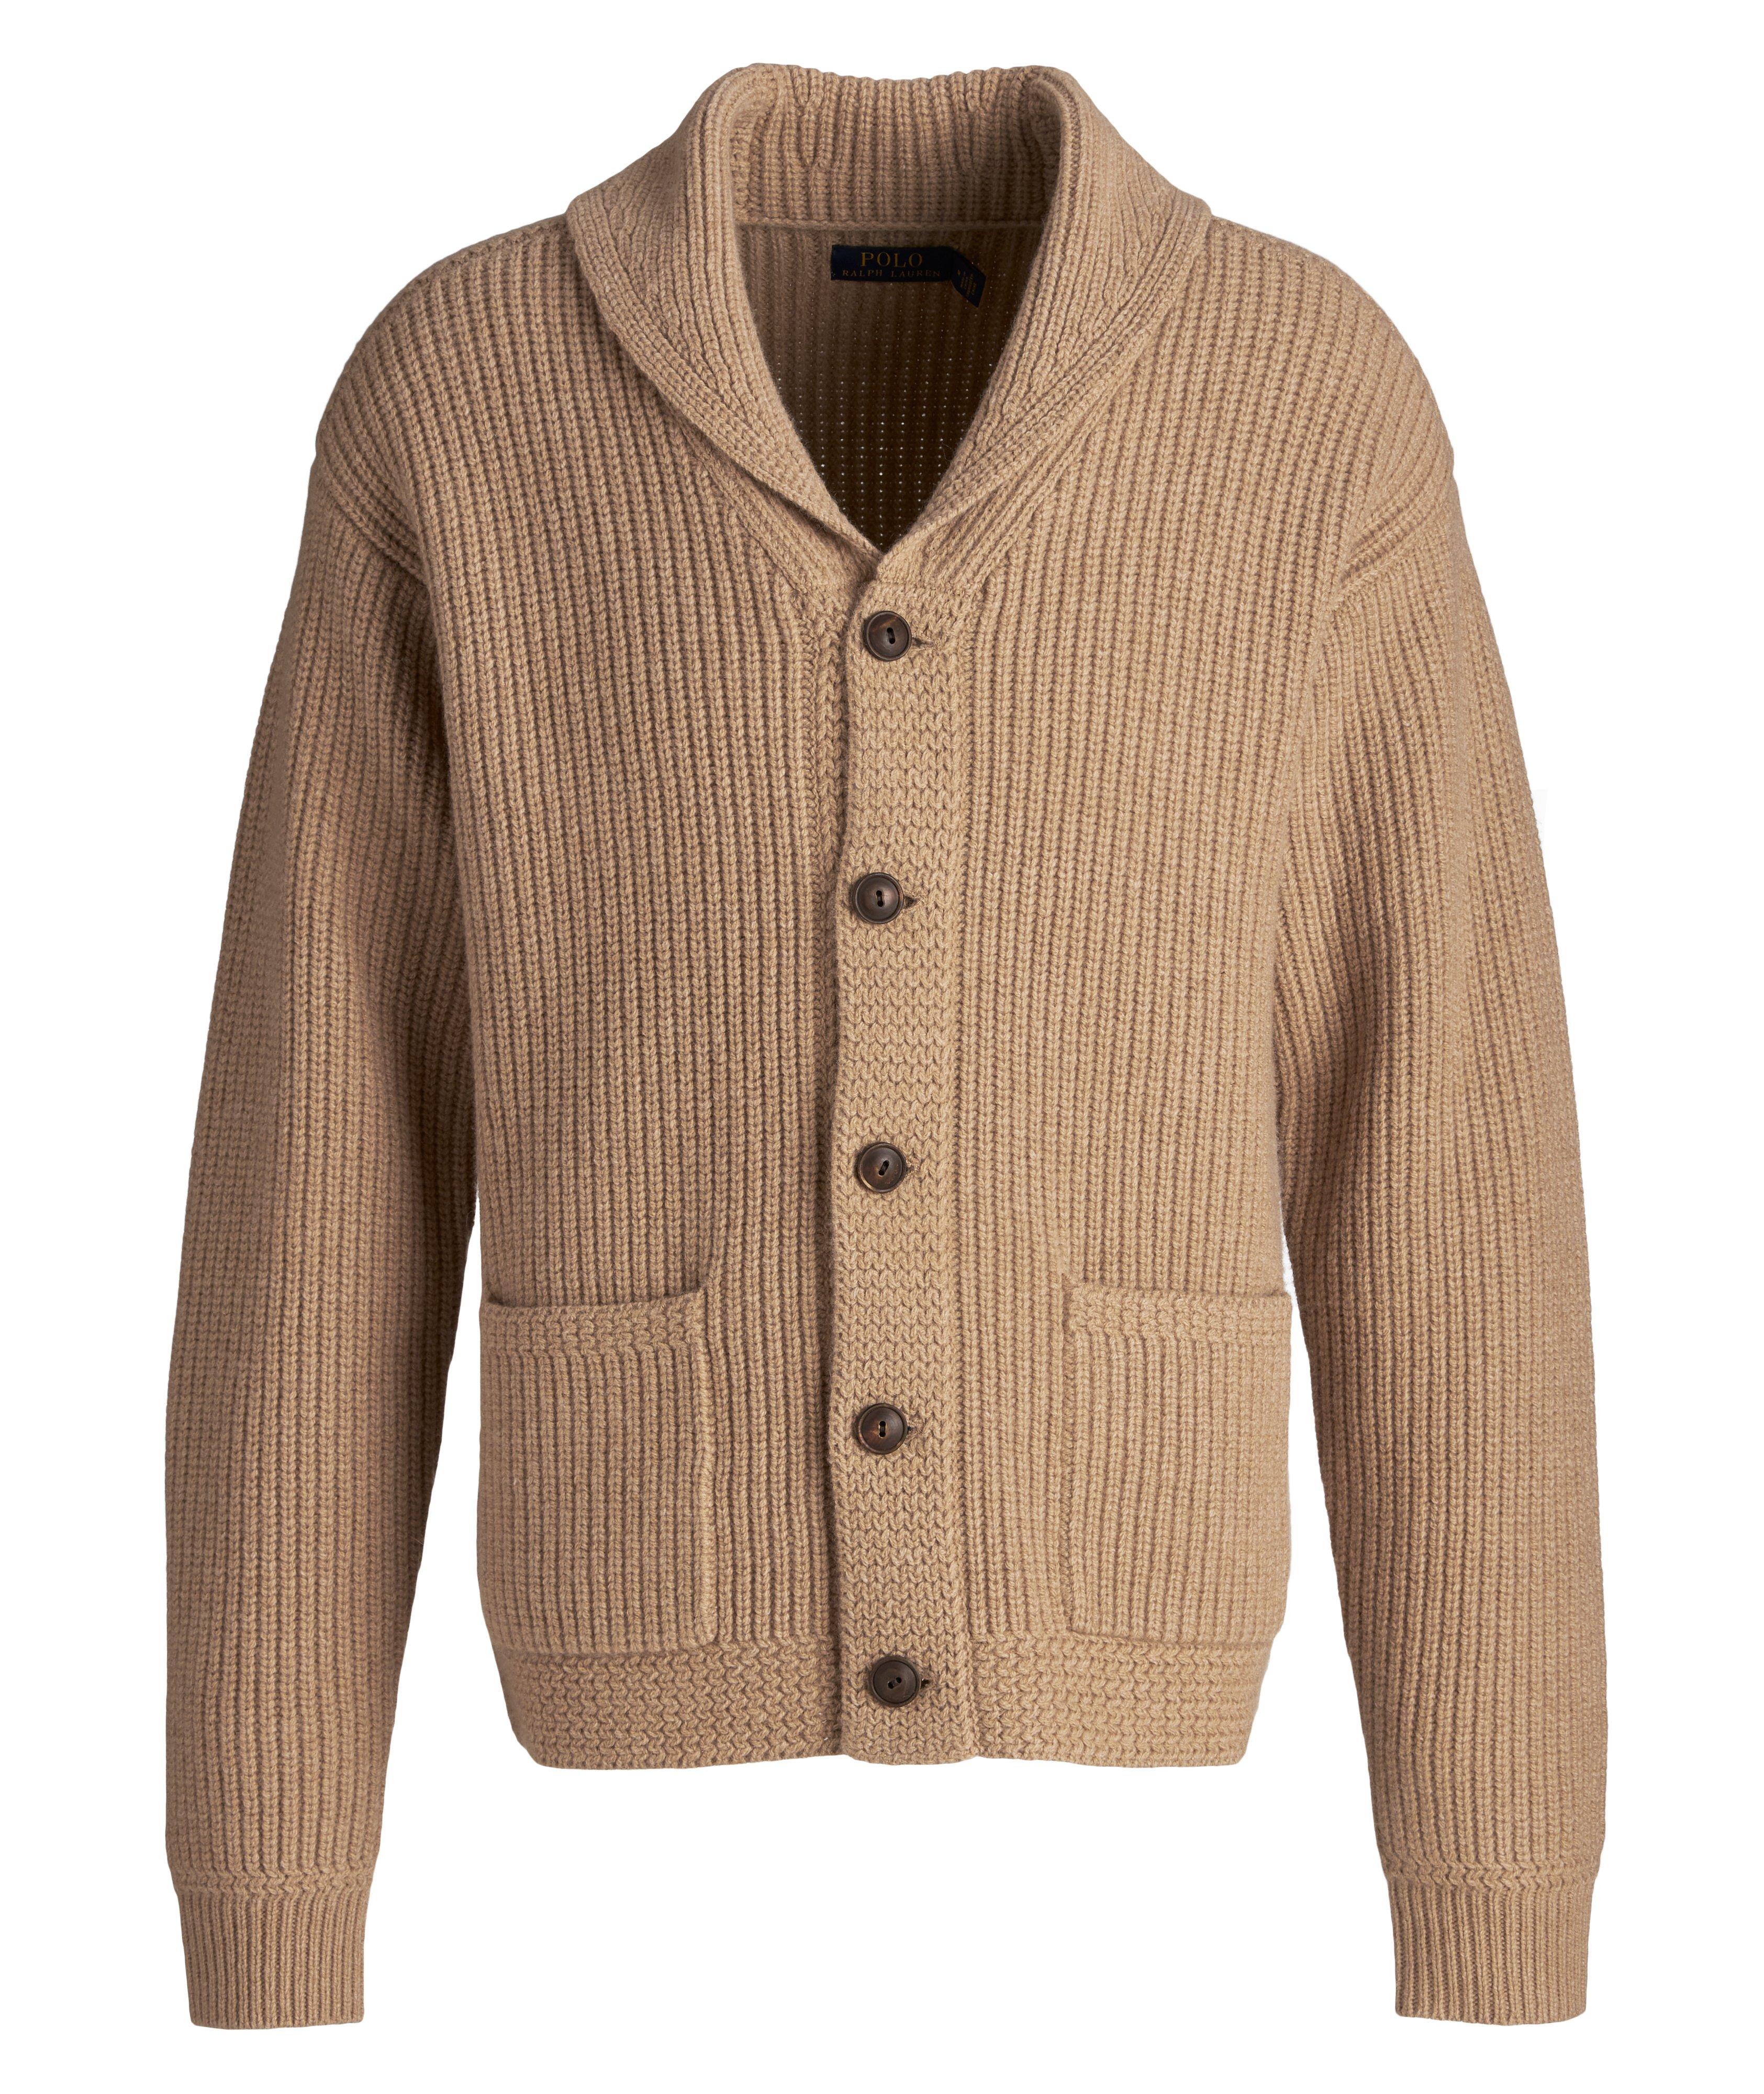 Cardigan en tricot côtelé de laine et cachemire à col châle image 0